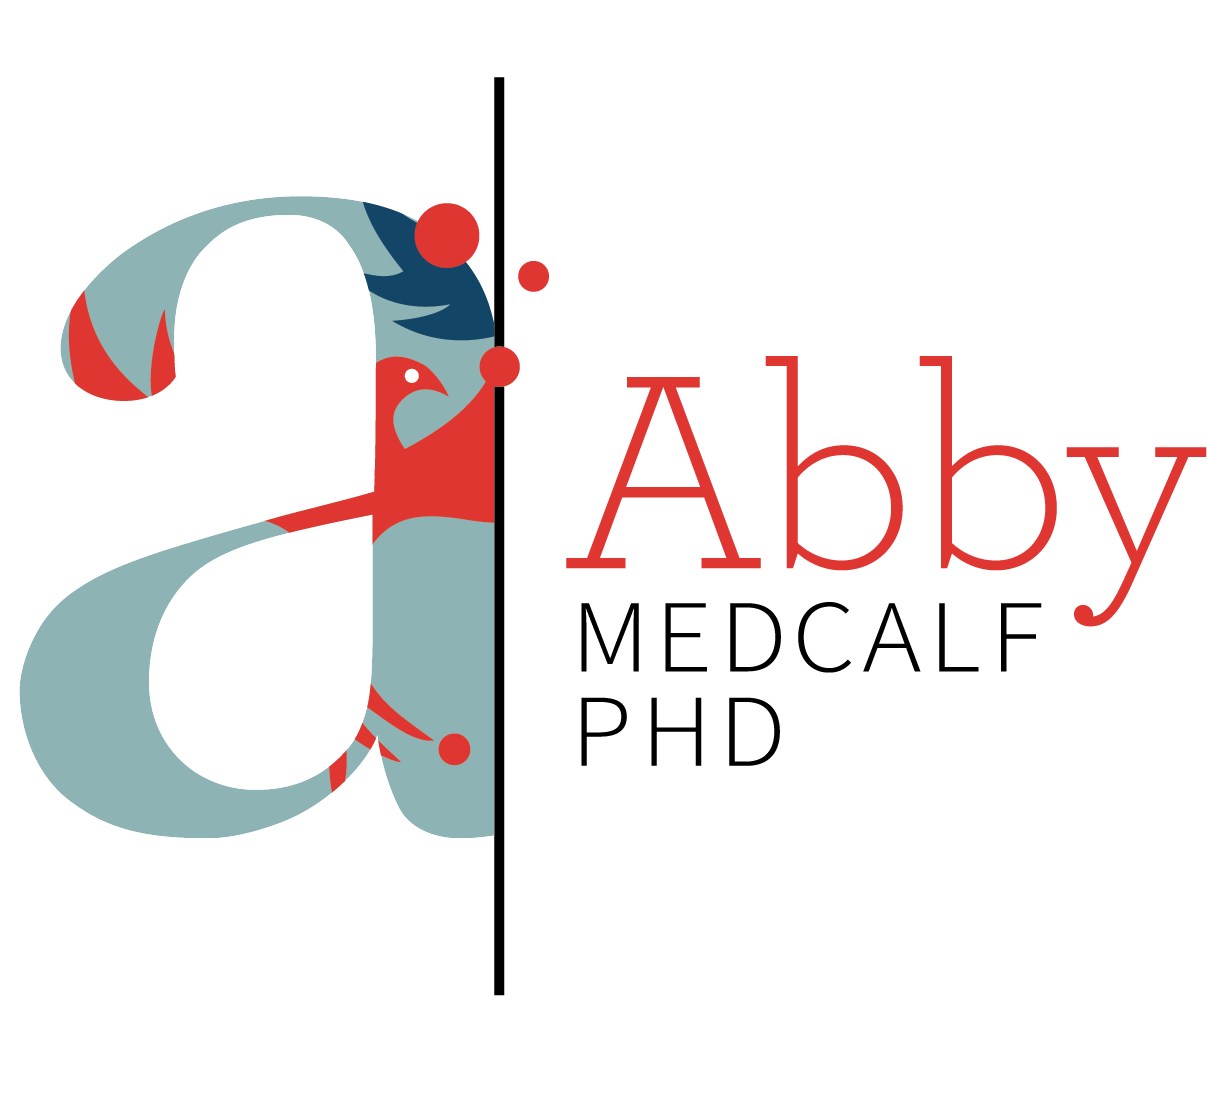 Abby Medcalf PhD logo